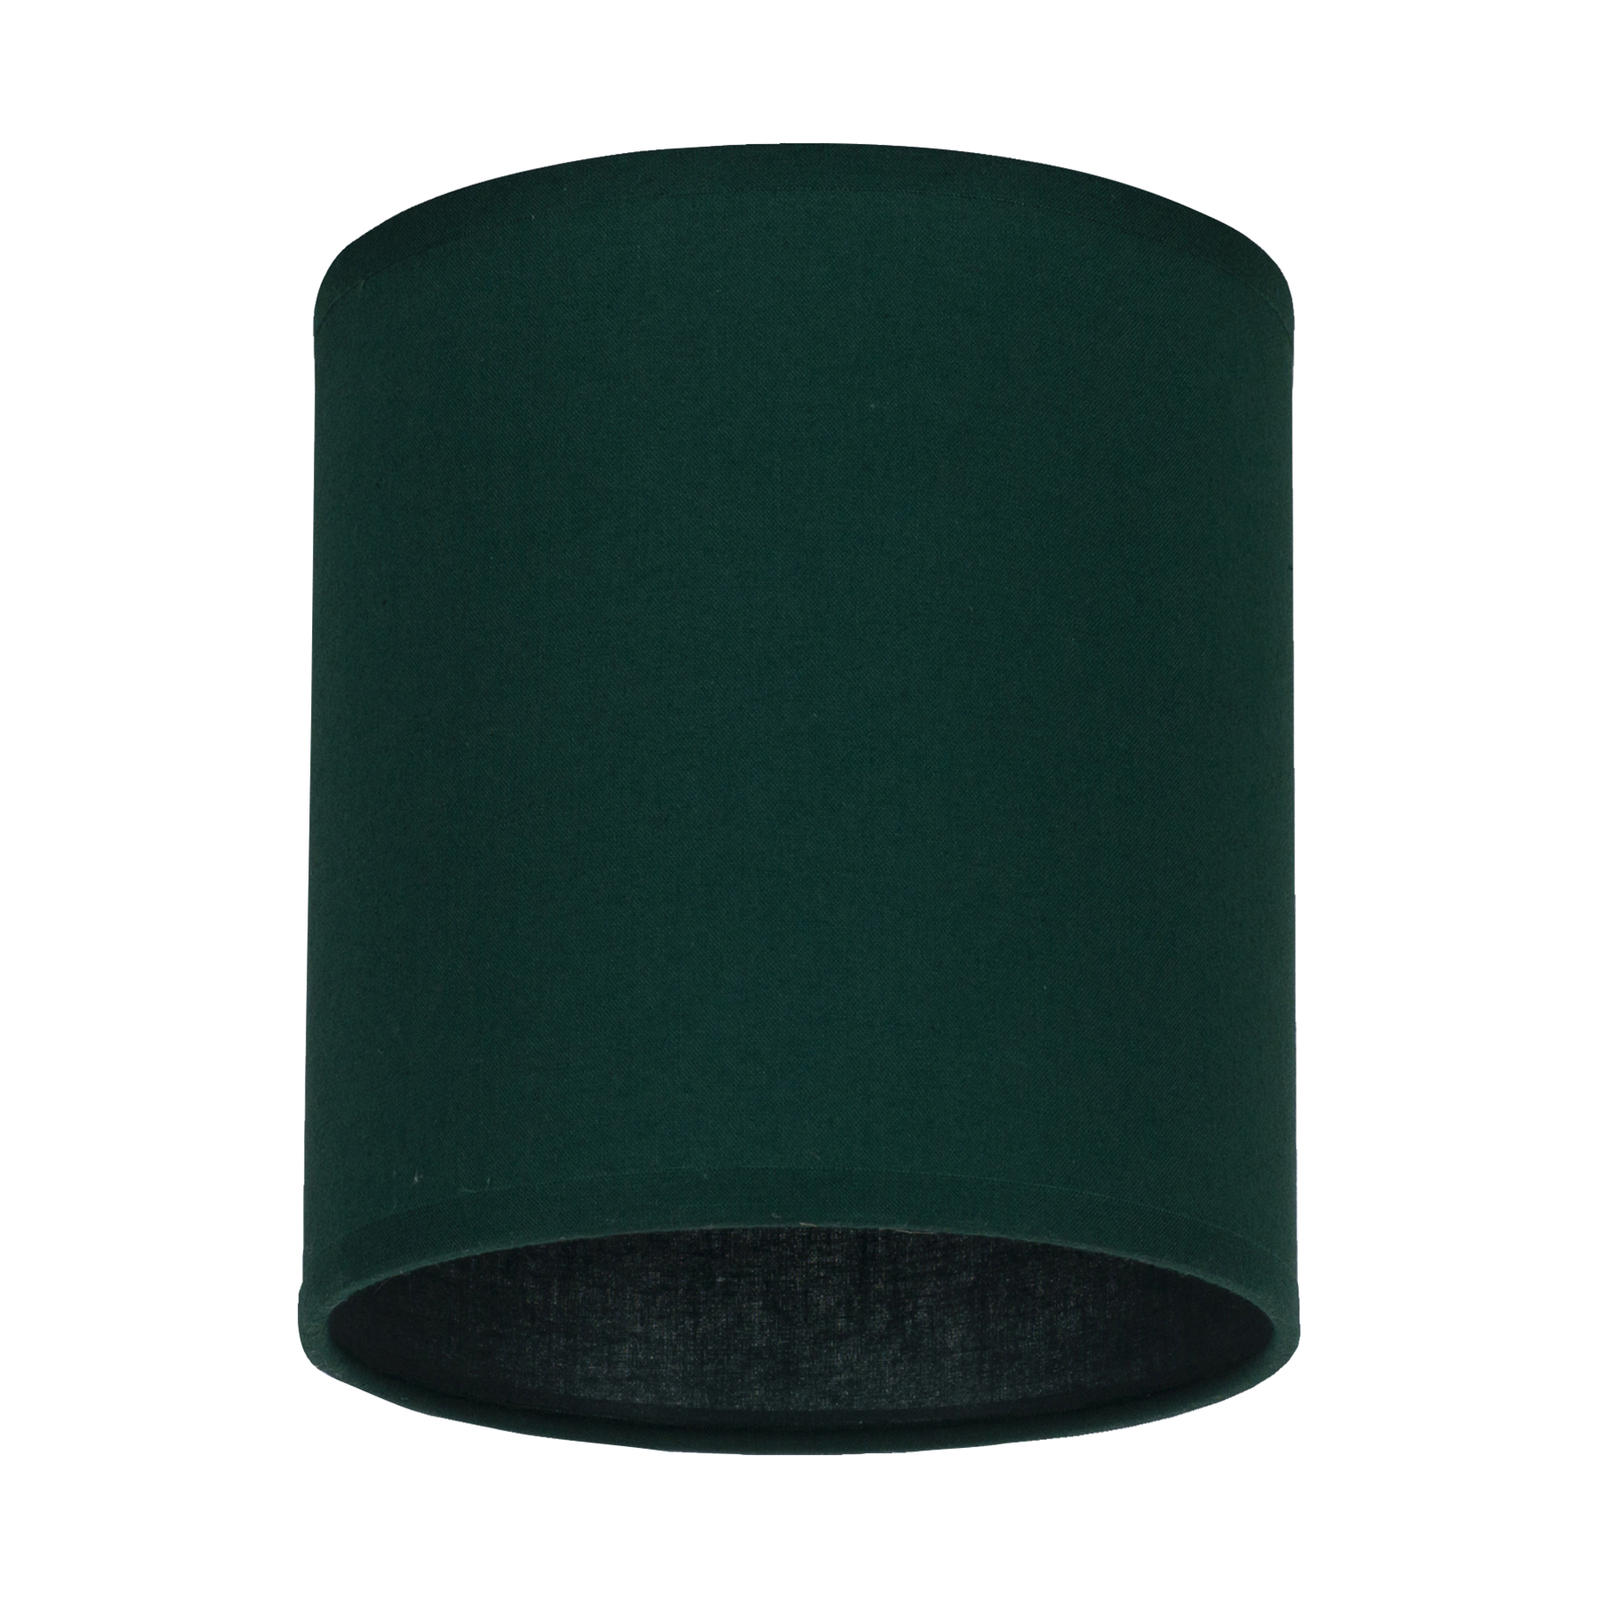 Lampeskjerm Roller, grønn, Ø 13 cm, høyde 15 cm